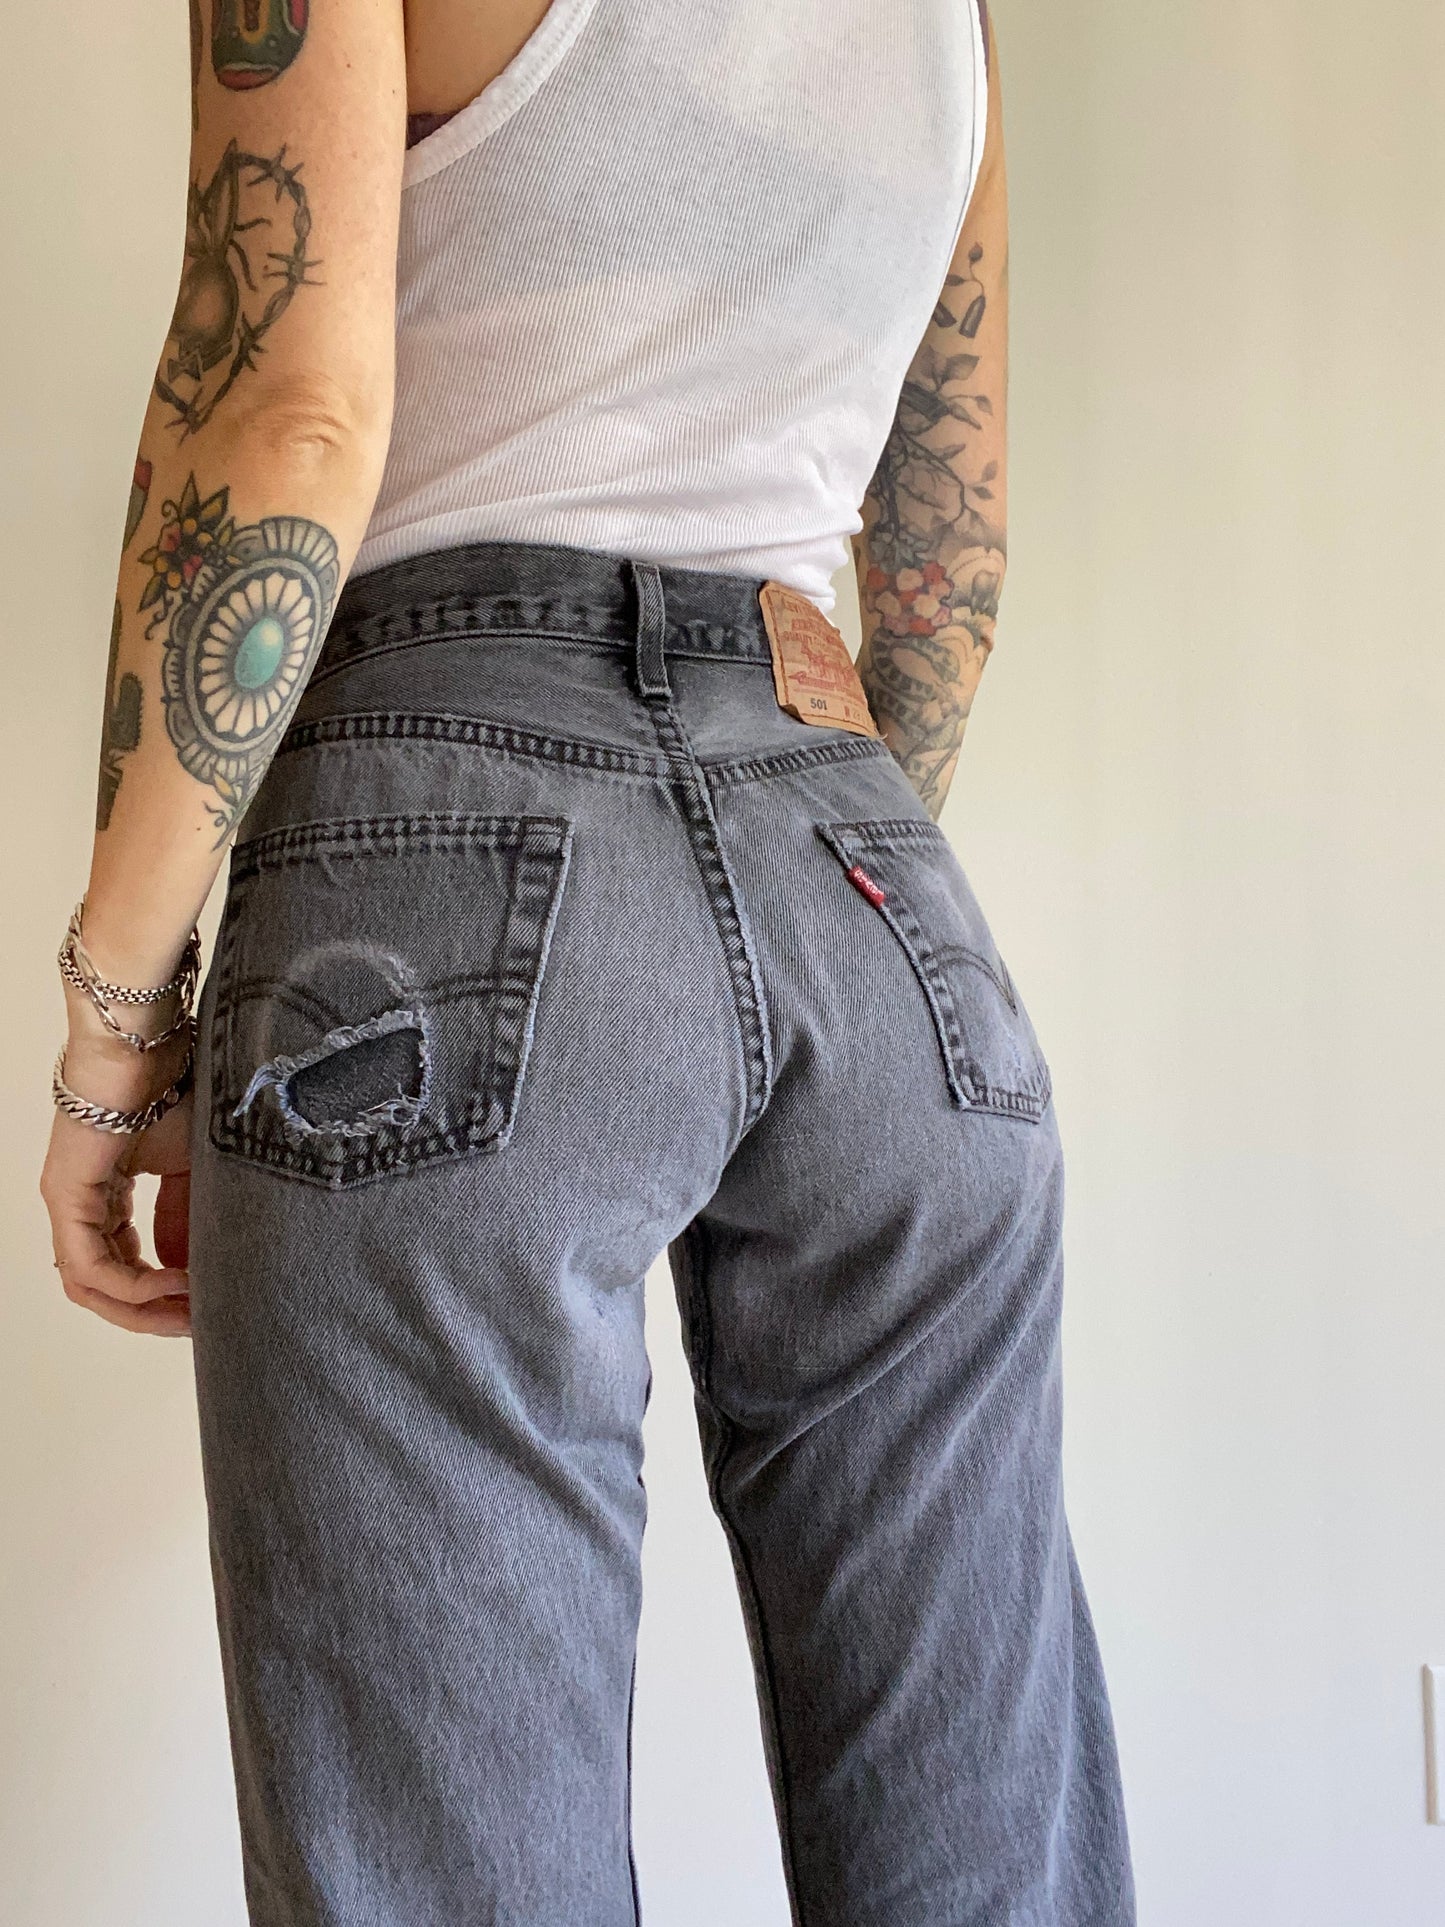 Size 25/26 Levi’s 501 jeans